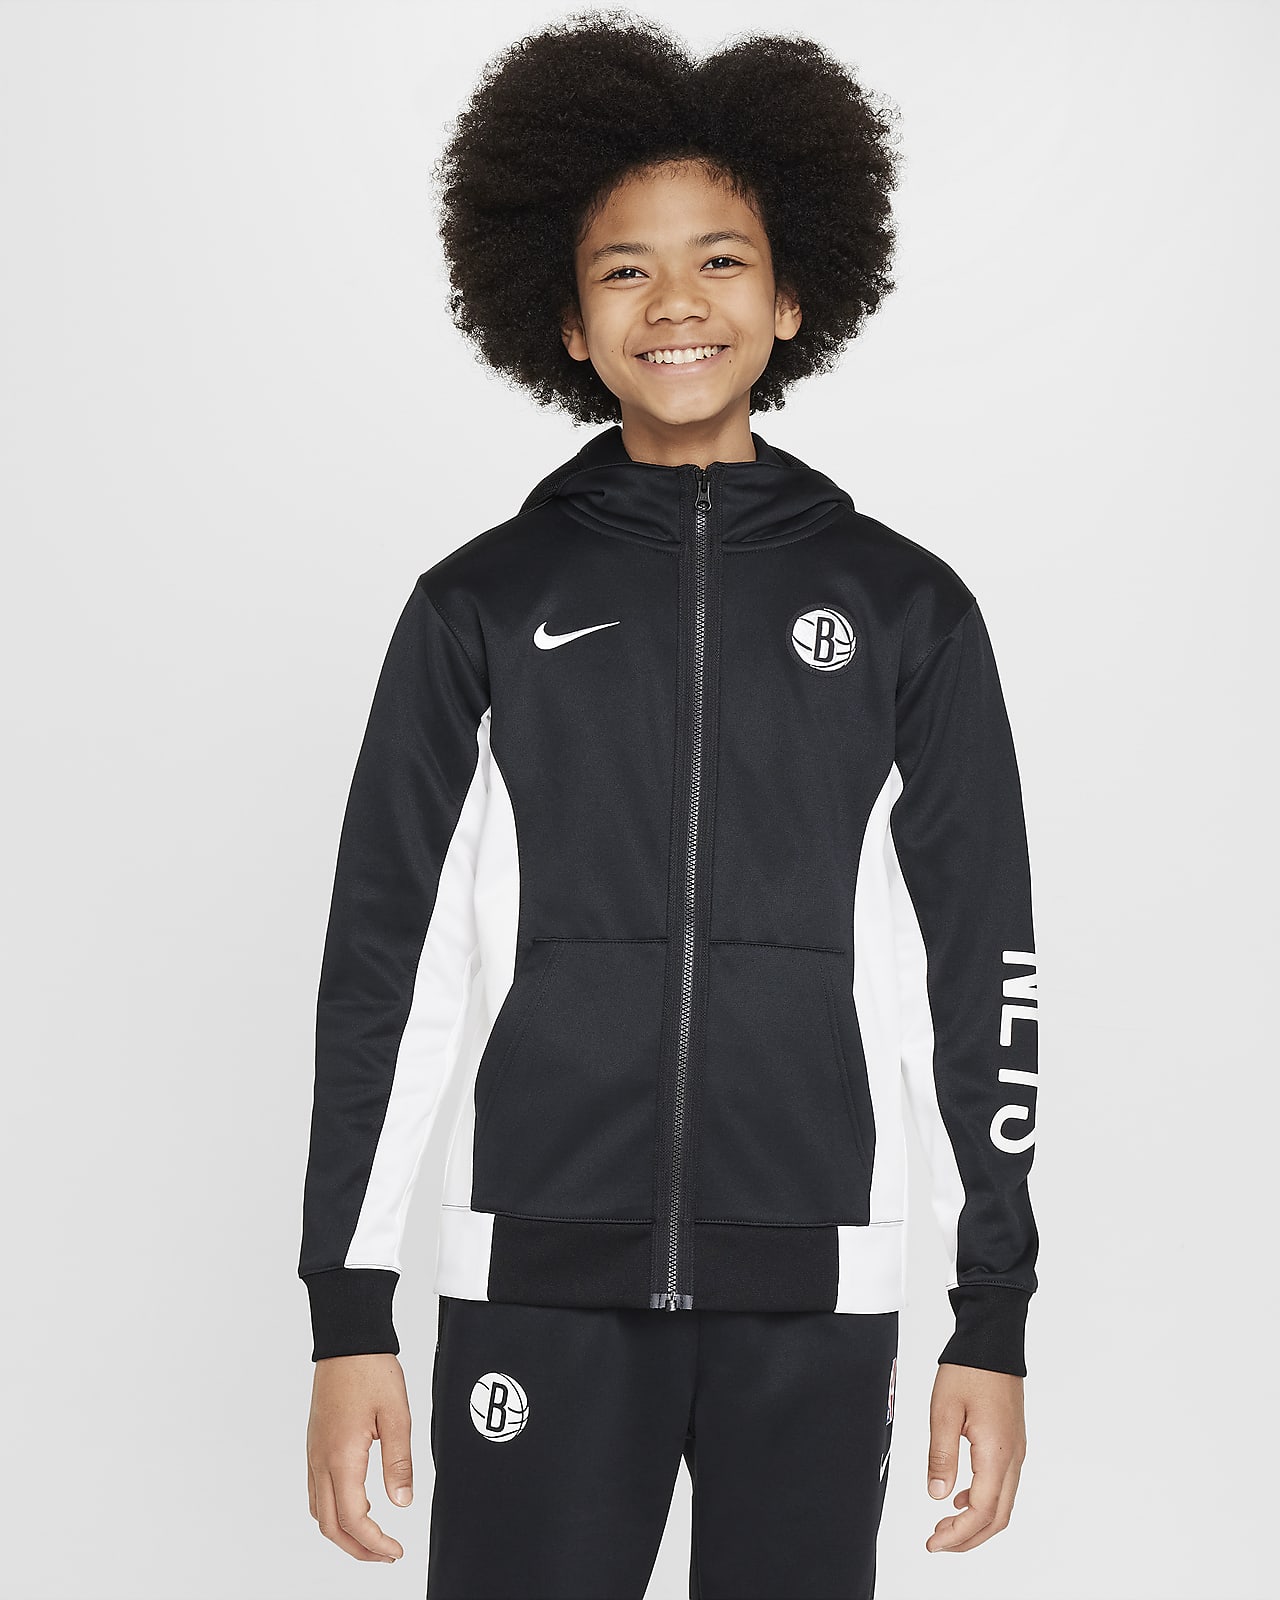 Μπλούζα με κουκούλα και φερμουάρ σε όλο το μήκος Nike Dri-FIT NBA Μπρούκλιν Νετς Showtime για μεγάλα παιδιά